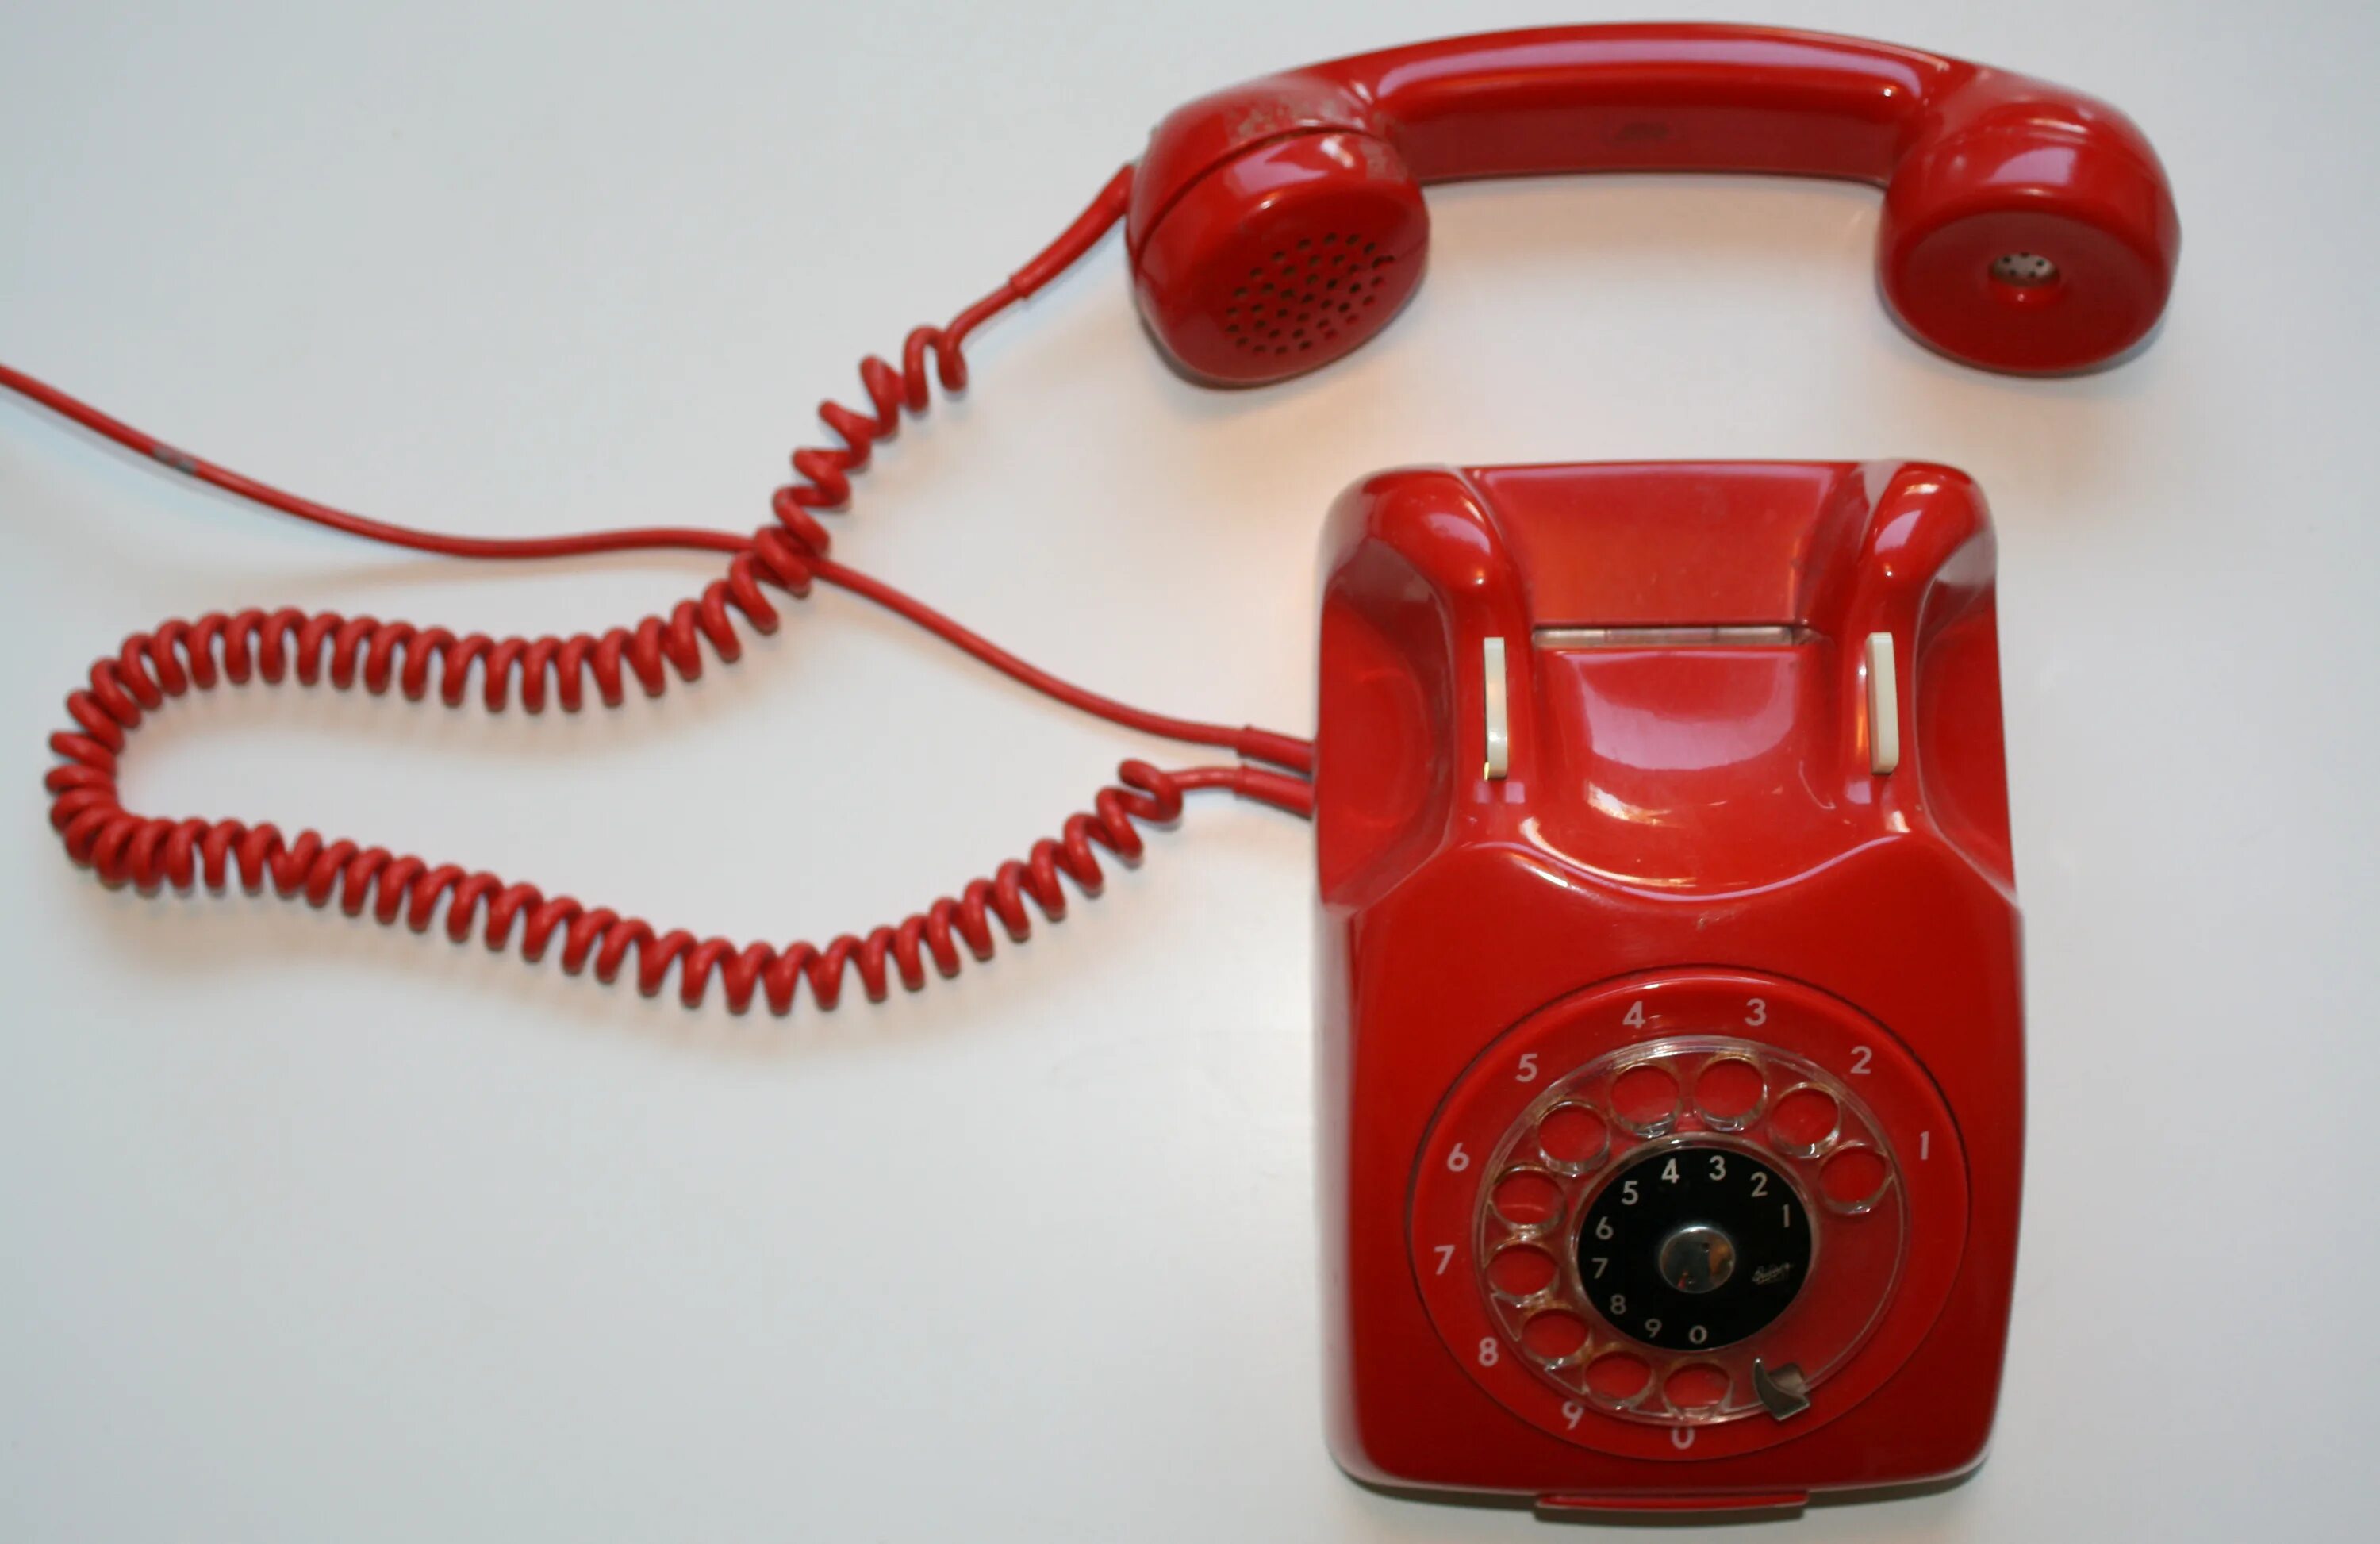 Красный телефон. Красный телефон современный. Телефон Alcatel красный старый. Красная телефонная трубка ретро. Старый красный телефон